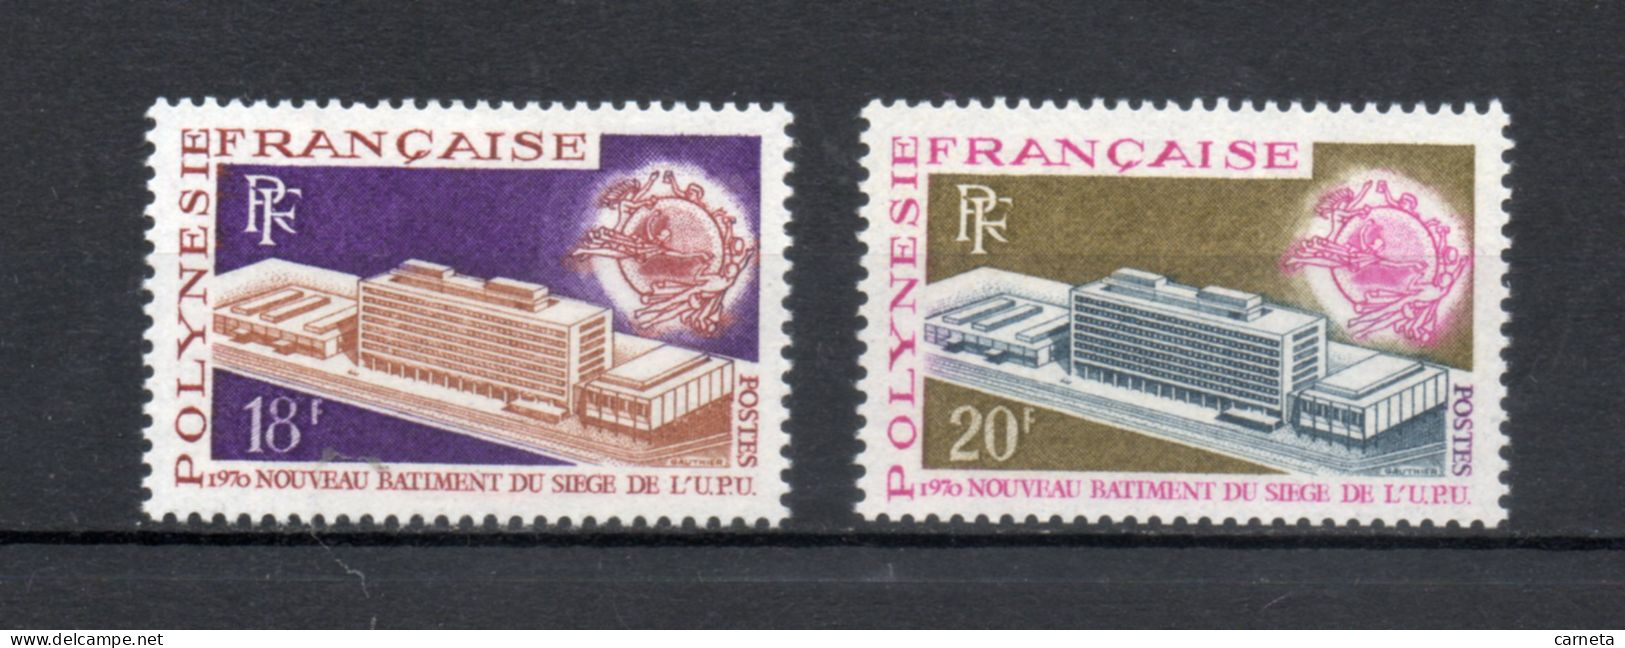 POLYNESIE  N°  80 + 81   NEUFS SANS CHARNIERE COTE  25.00€    UPU - Unused Stamps